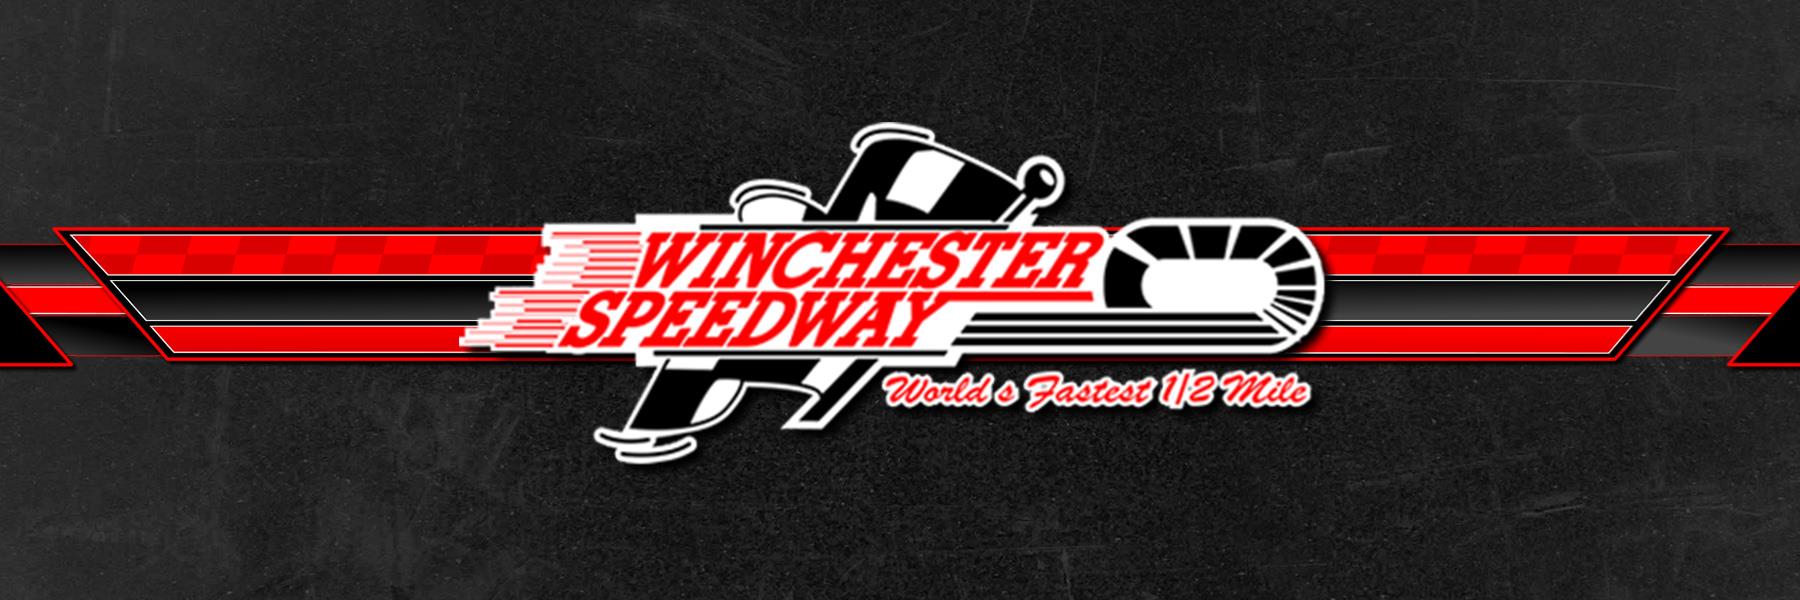 9/28/2008 - Winchester Speedway